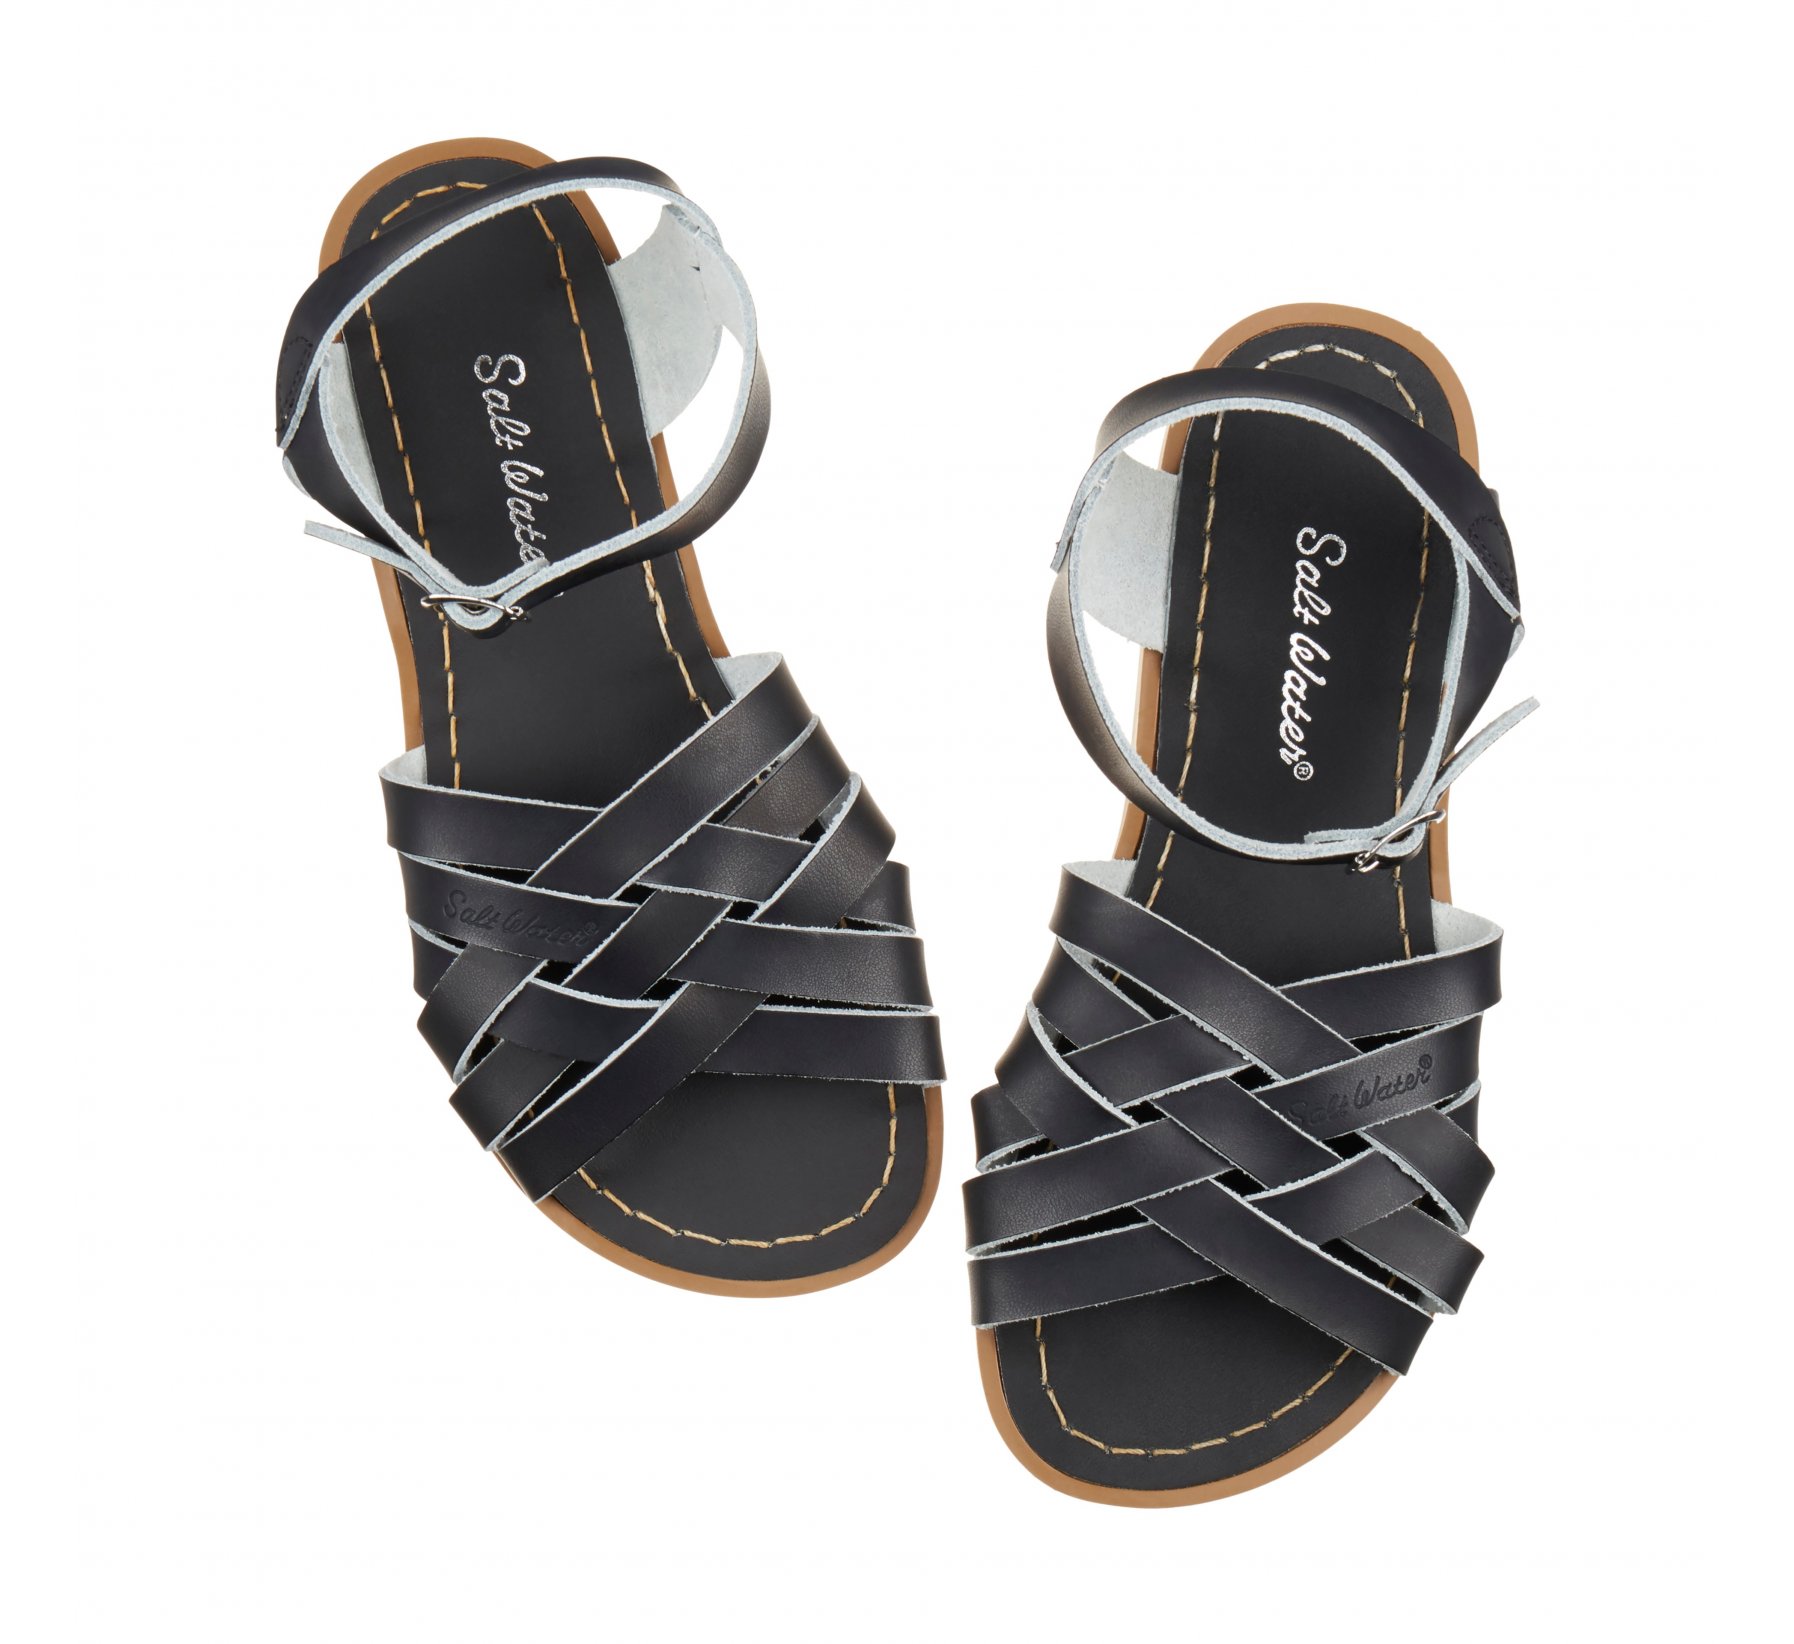 Retro Black Kids Sandals - Salt Water Sandals